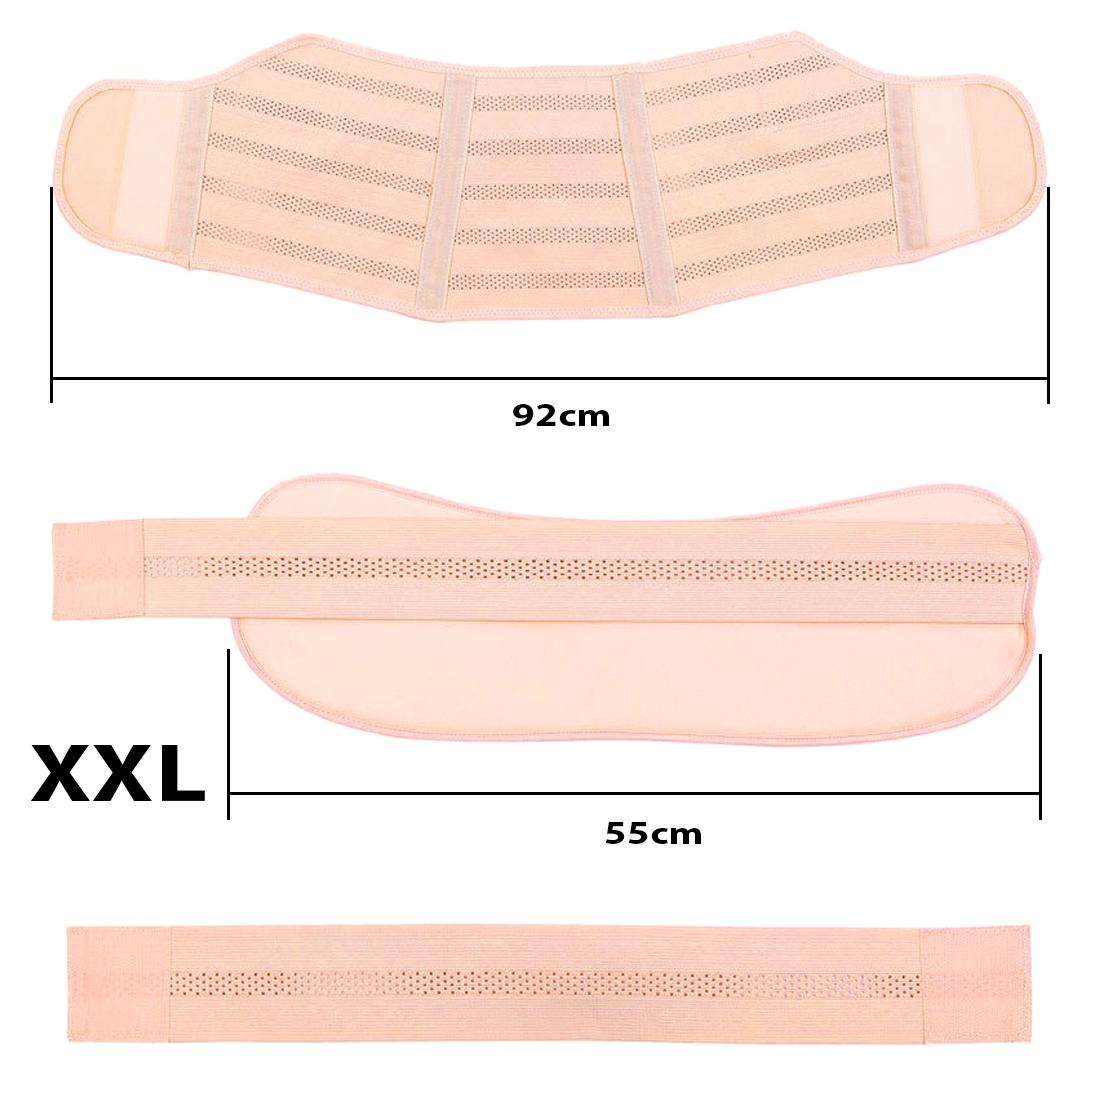 Фото 6 Бандаж для беременных XXL эластичный пояс на липучках UFT Bandage